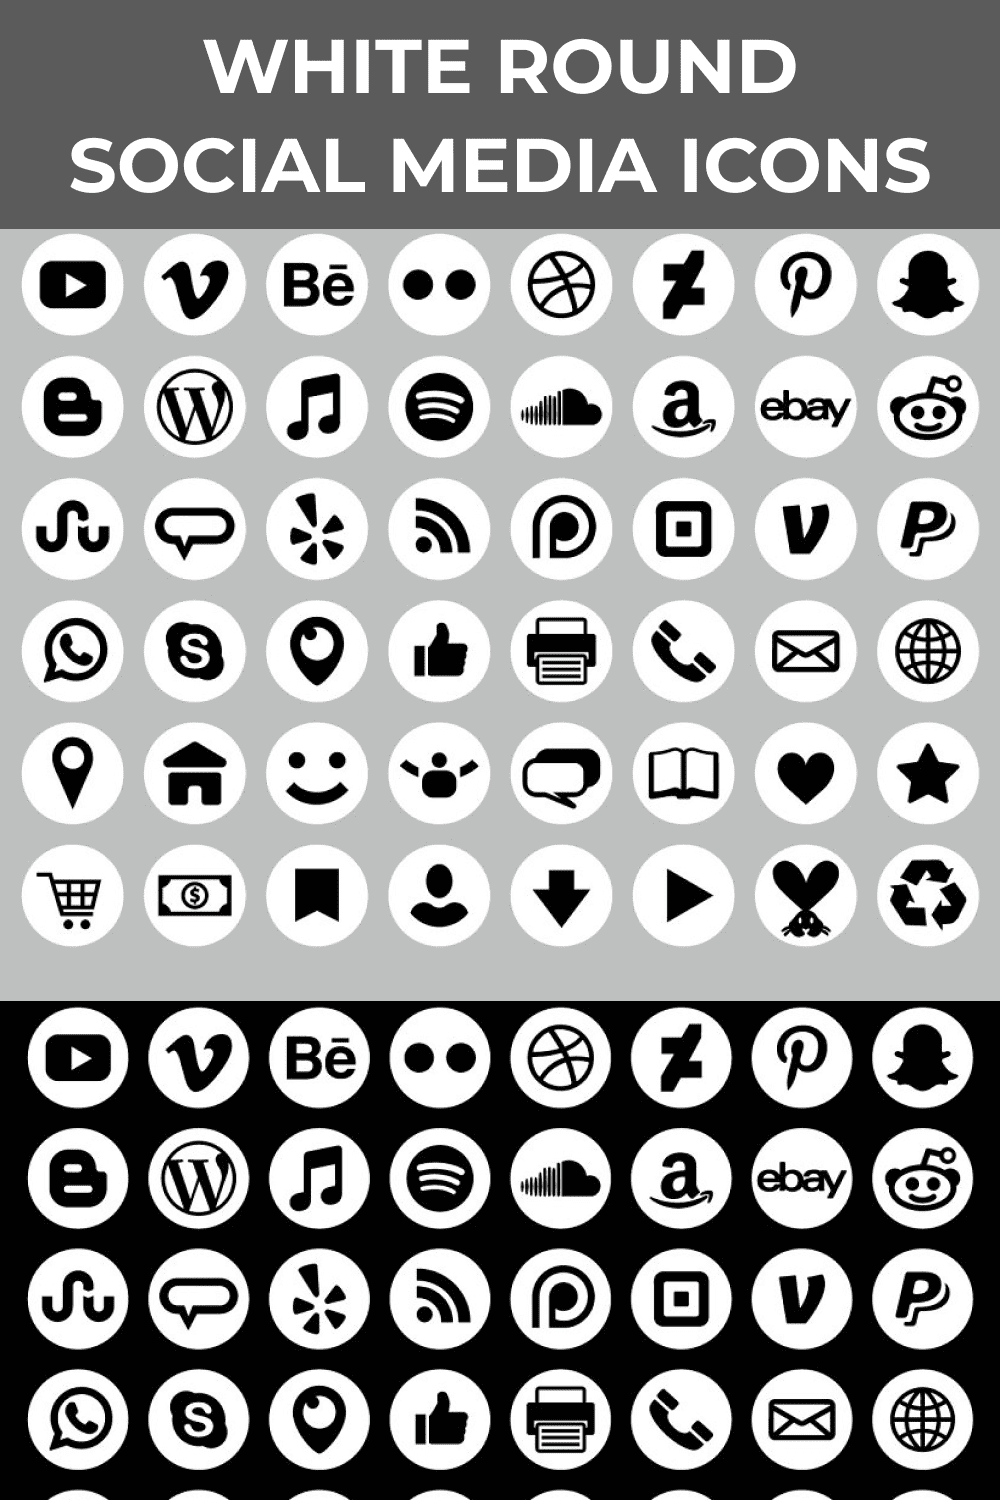 White round social media icons.